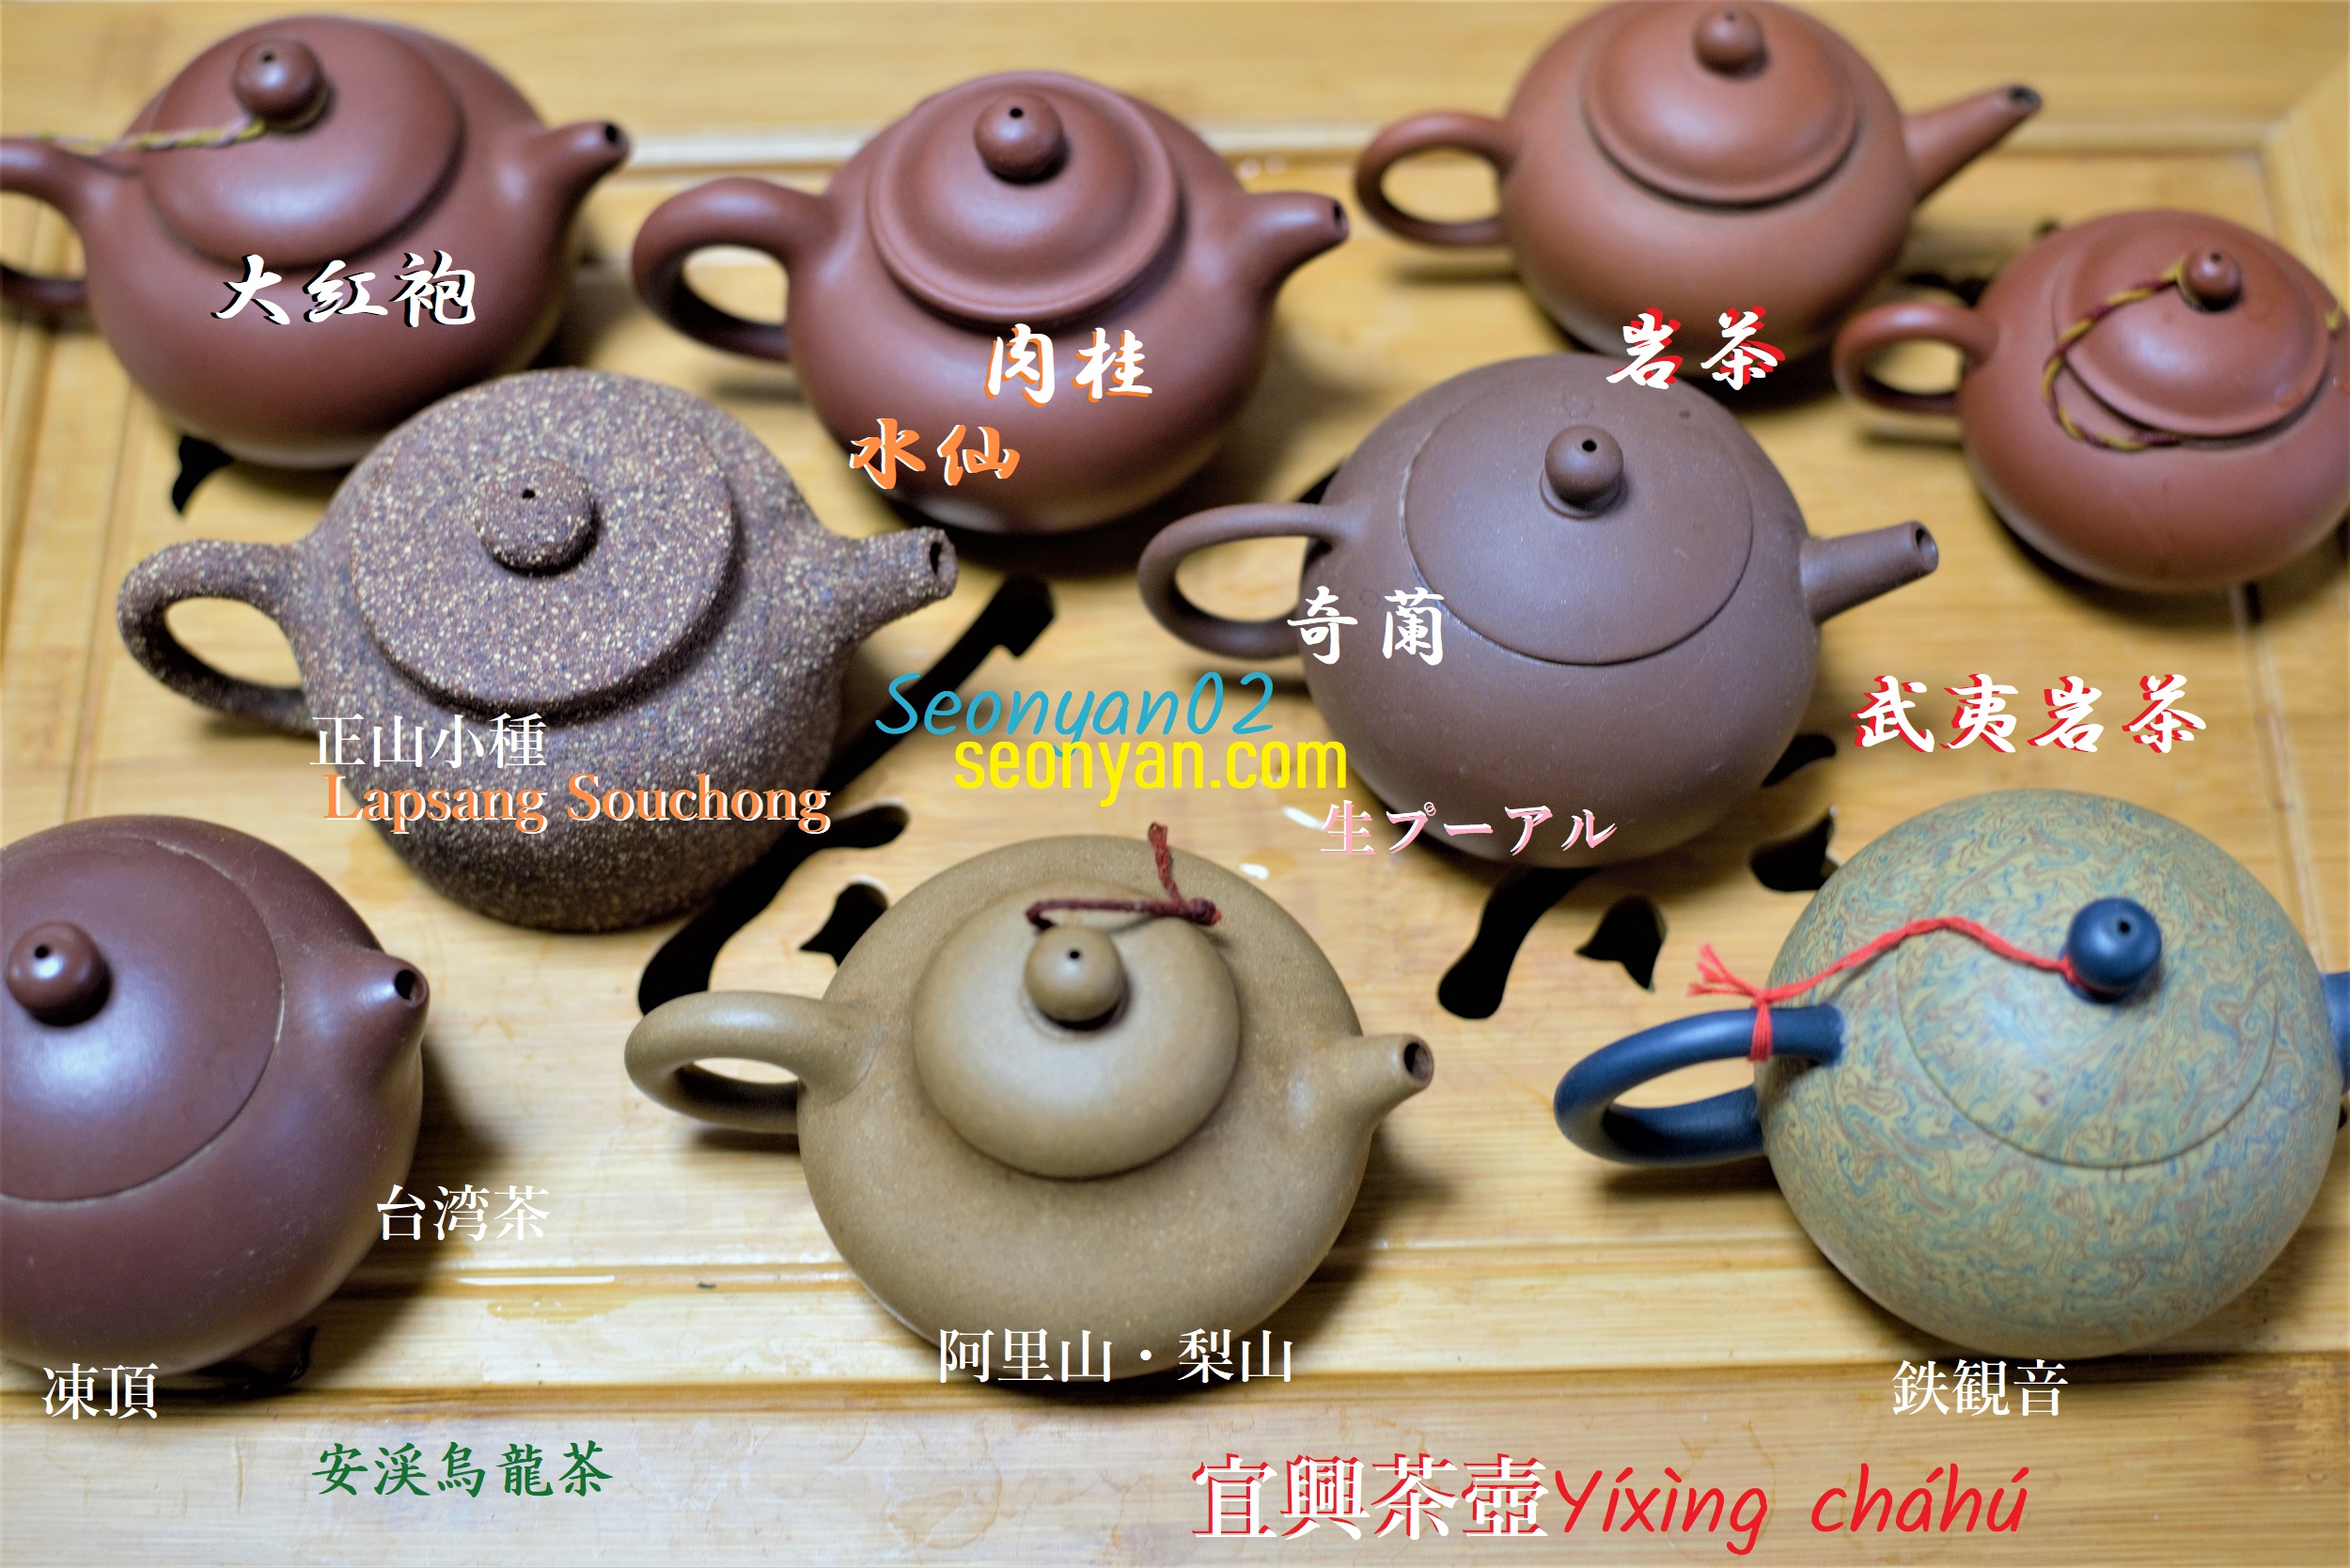 私の宣興茶壺コレクション